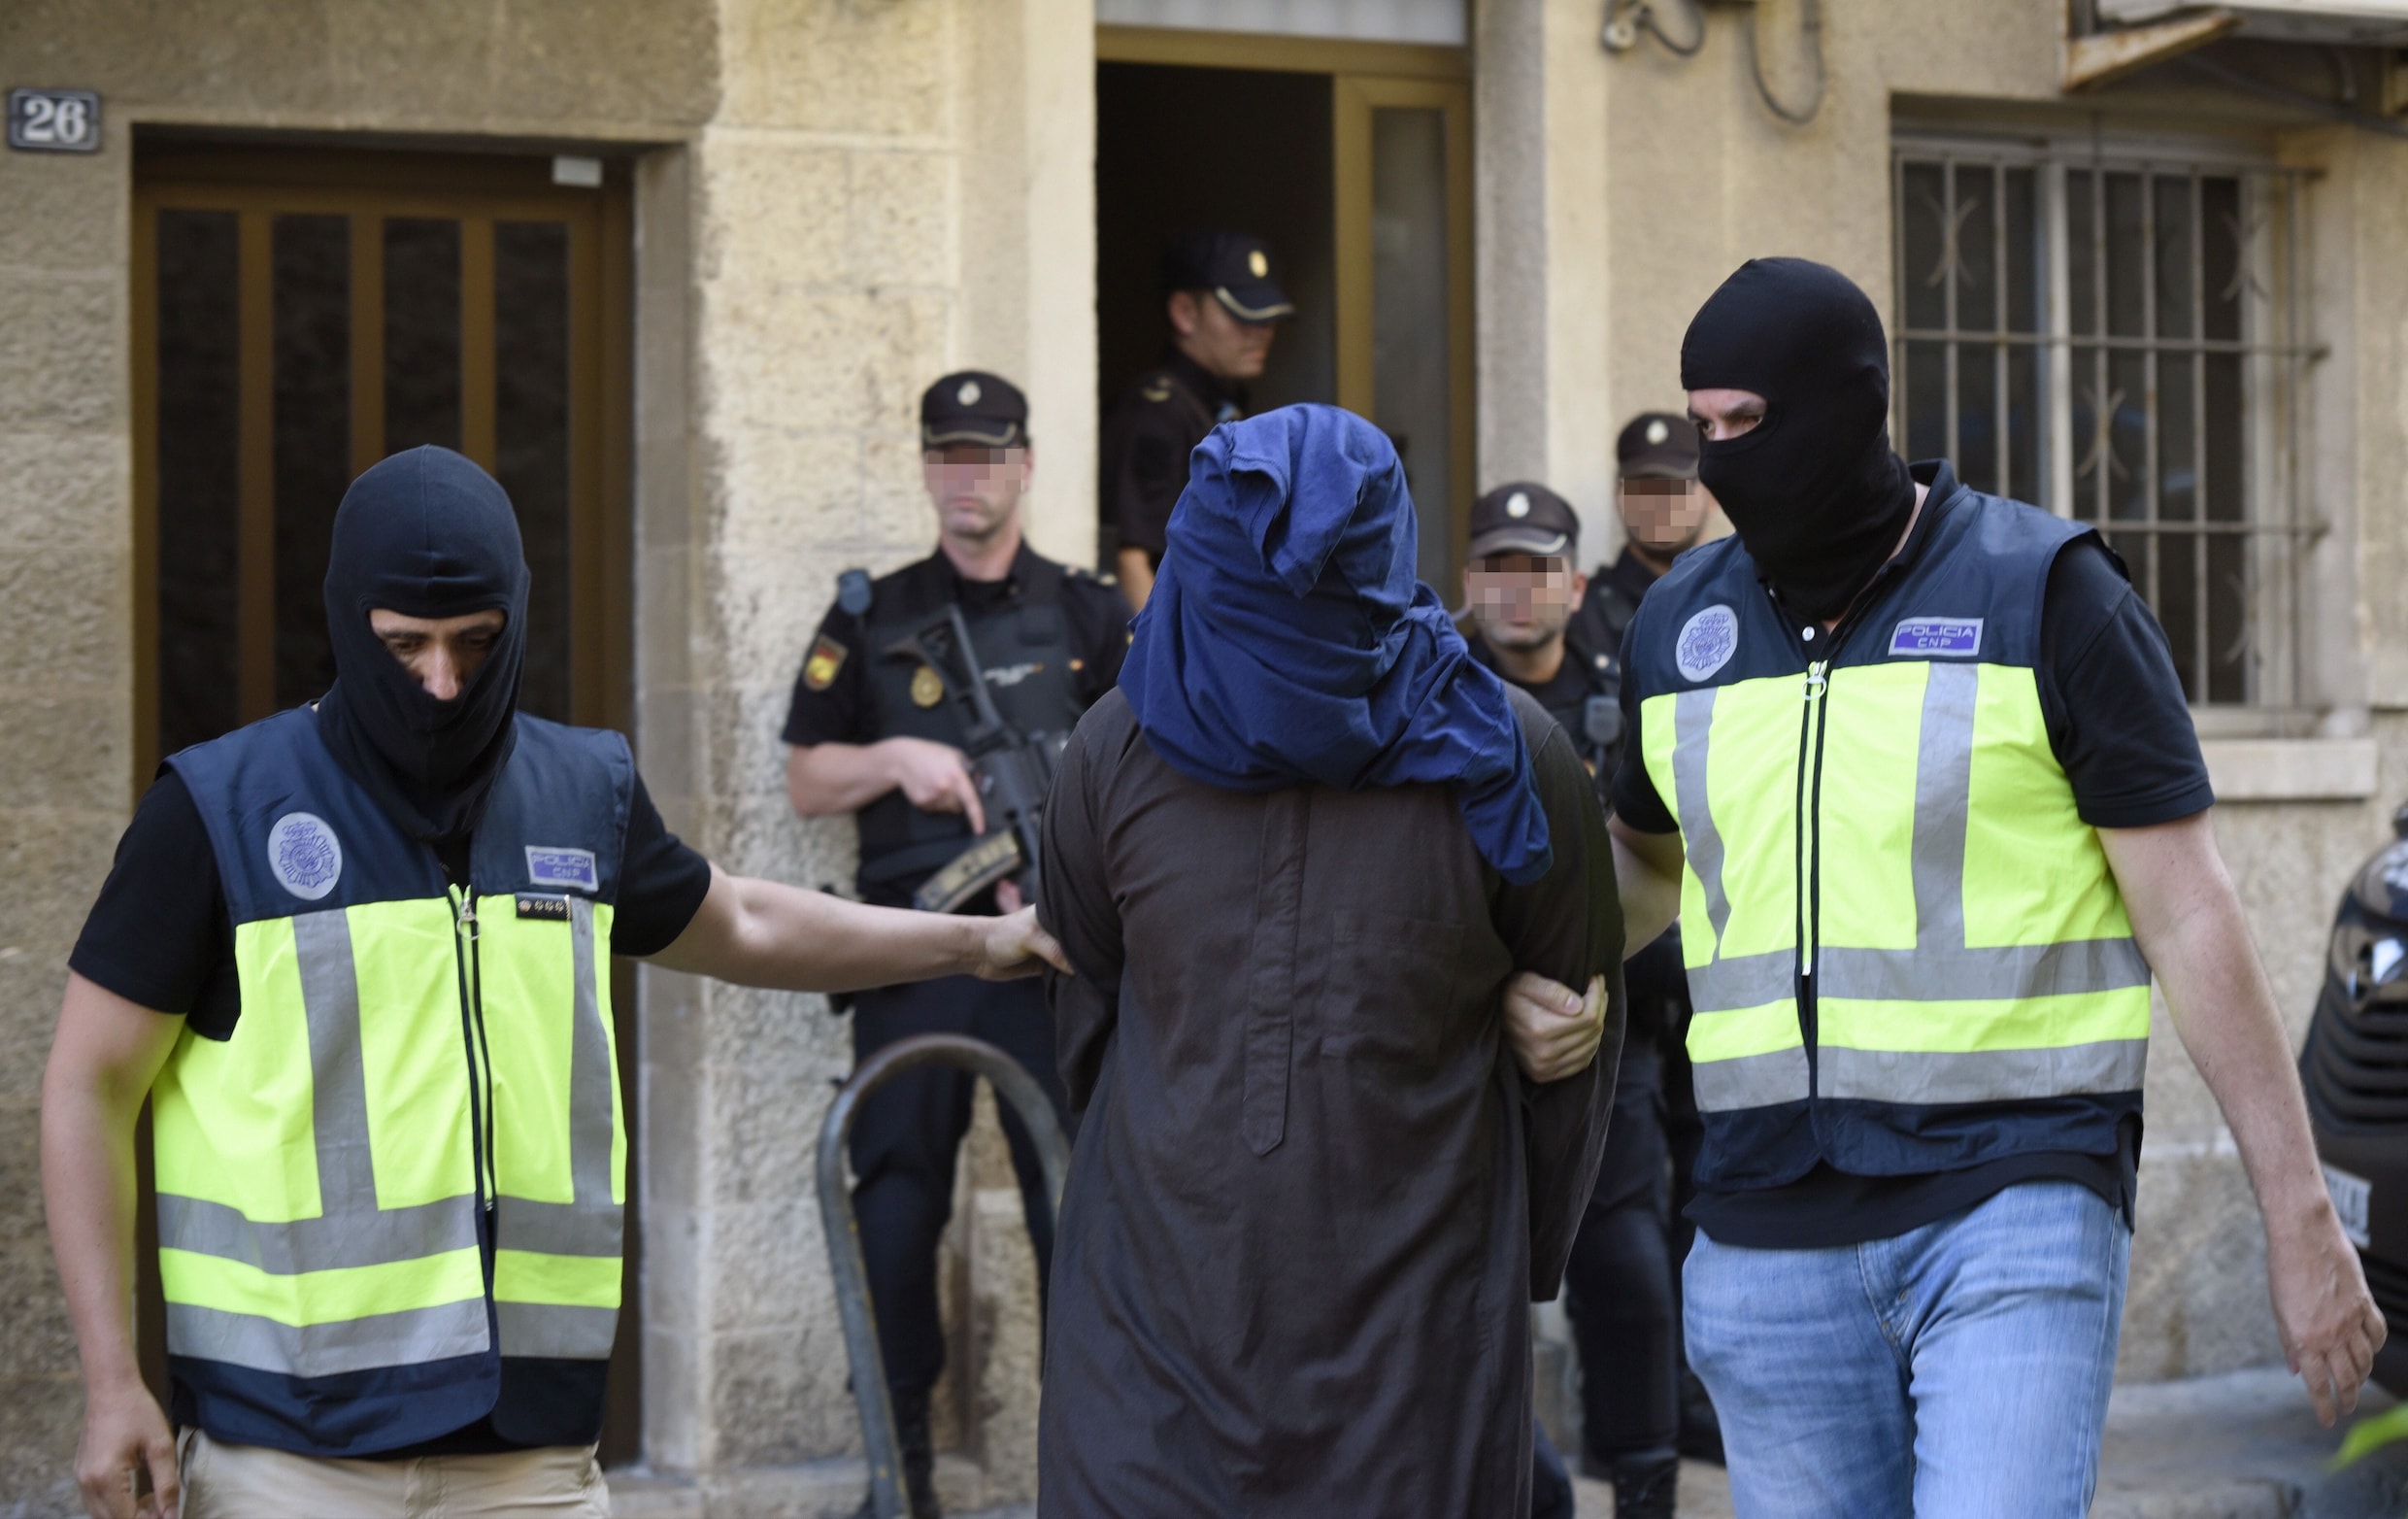 Terreurcel moest op Mallorca bloedbad aanrichten, Belgische imam mogelijk betrokken